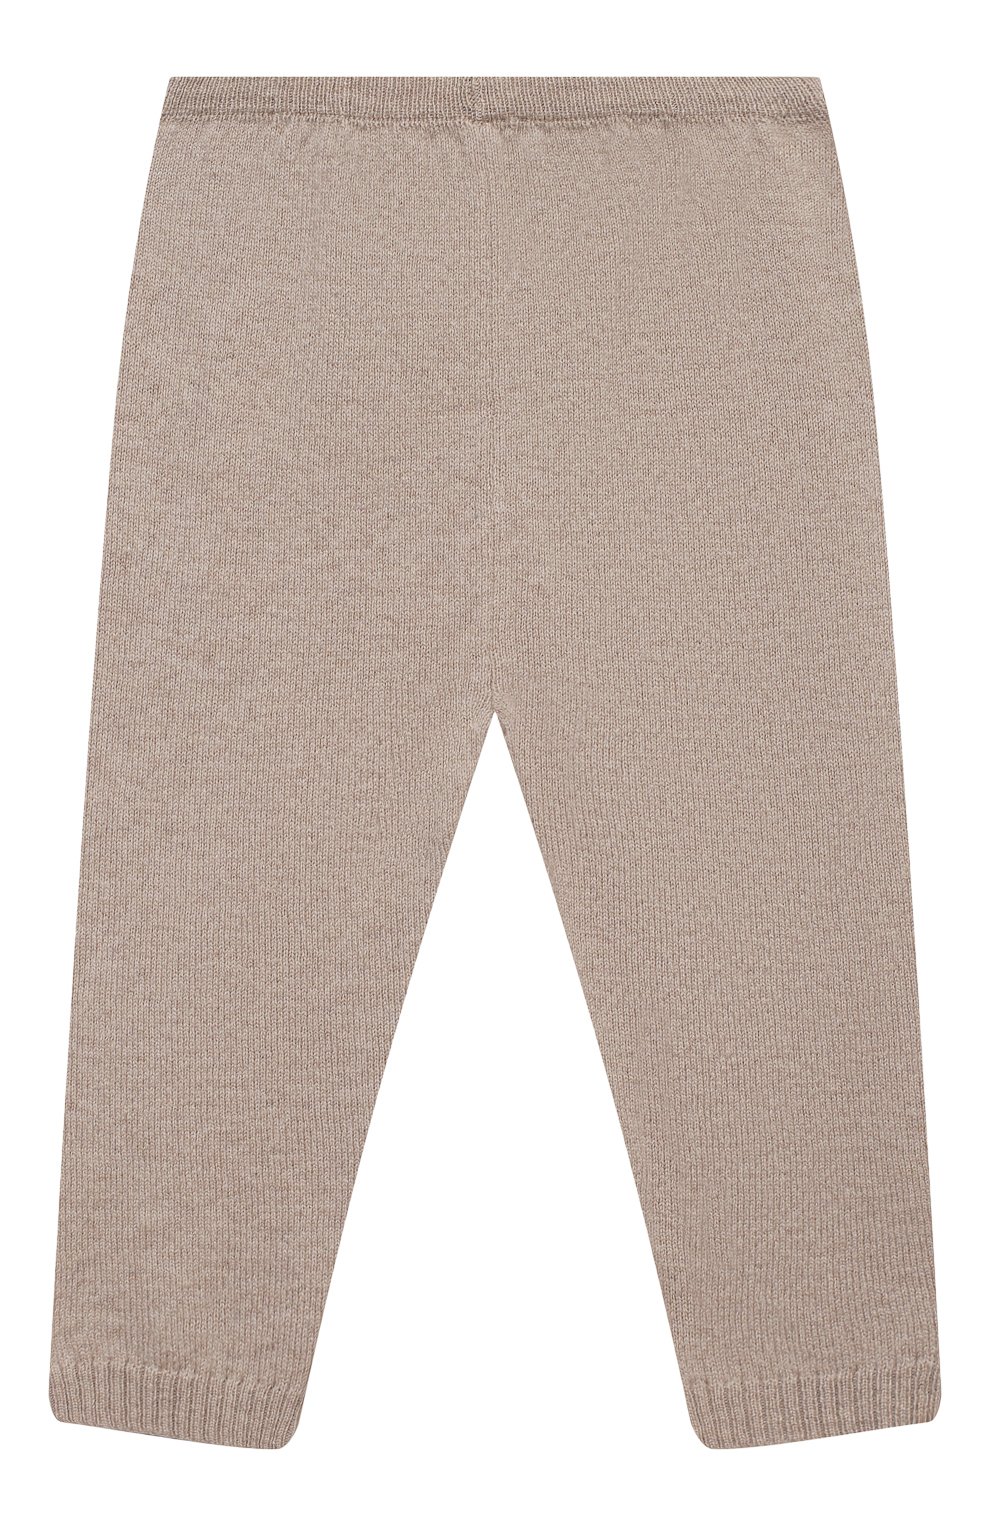 Детский комплект из пуловера и брюк BABY T бежевого цвета, арт. 20AI170C/18M-3A | Фото 5 (Материал внешний: Шерсть; Ростовка одежда: 18 мес | 86 см, 24 мес | 92 см, 36 мес | 98 см)